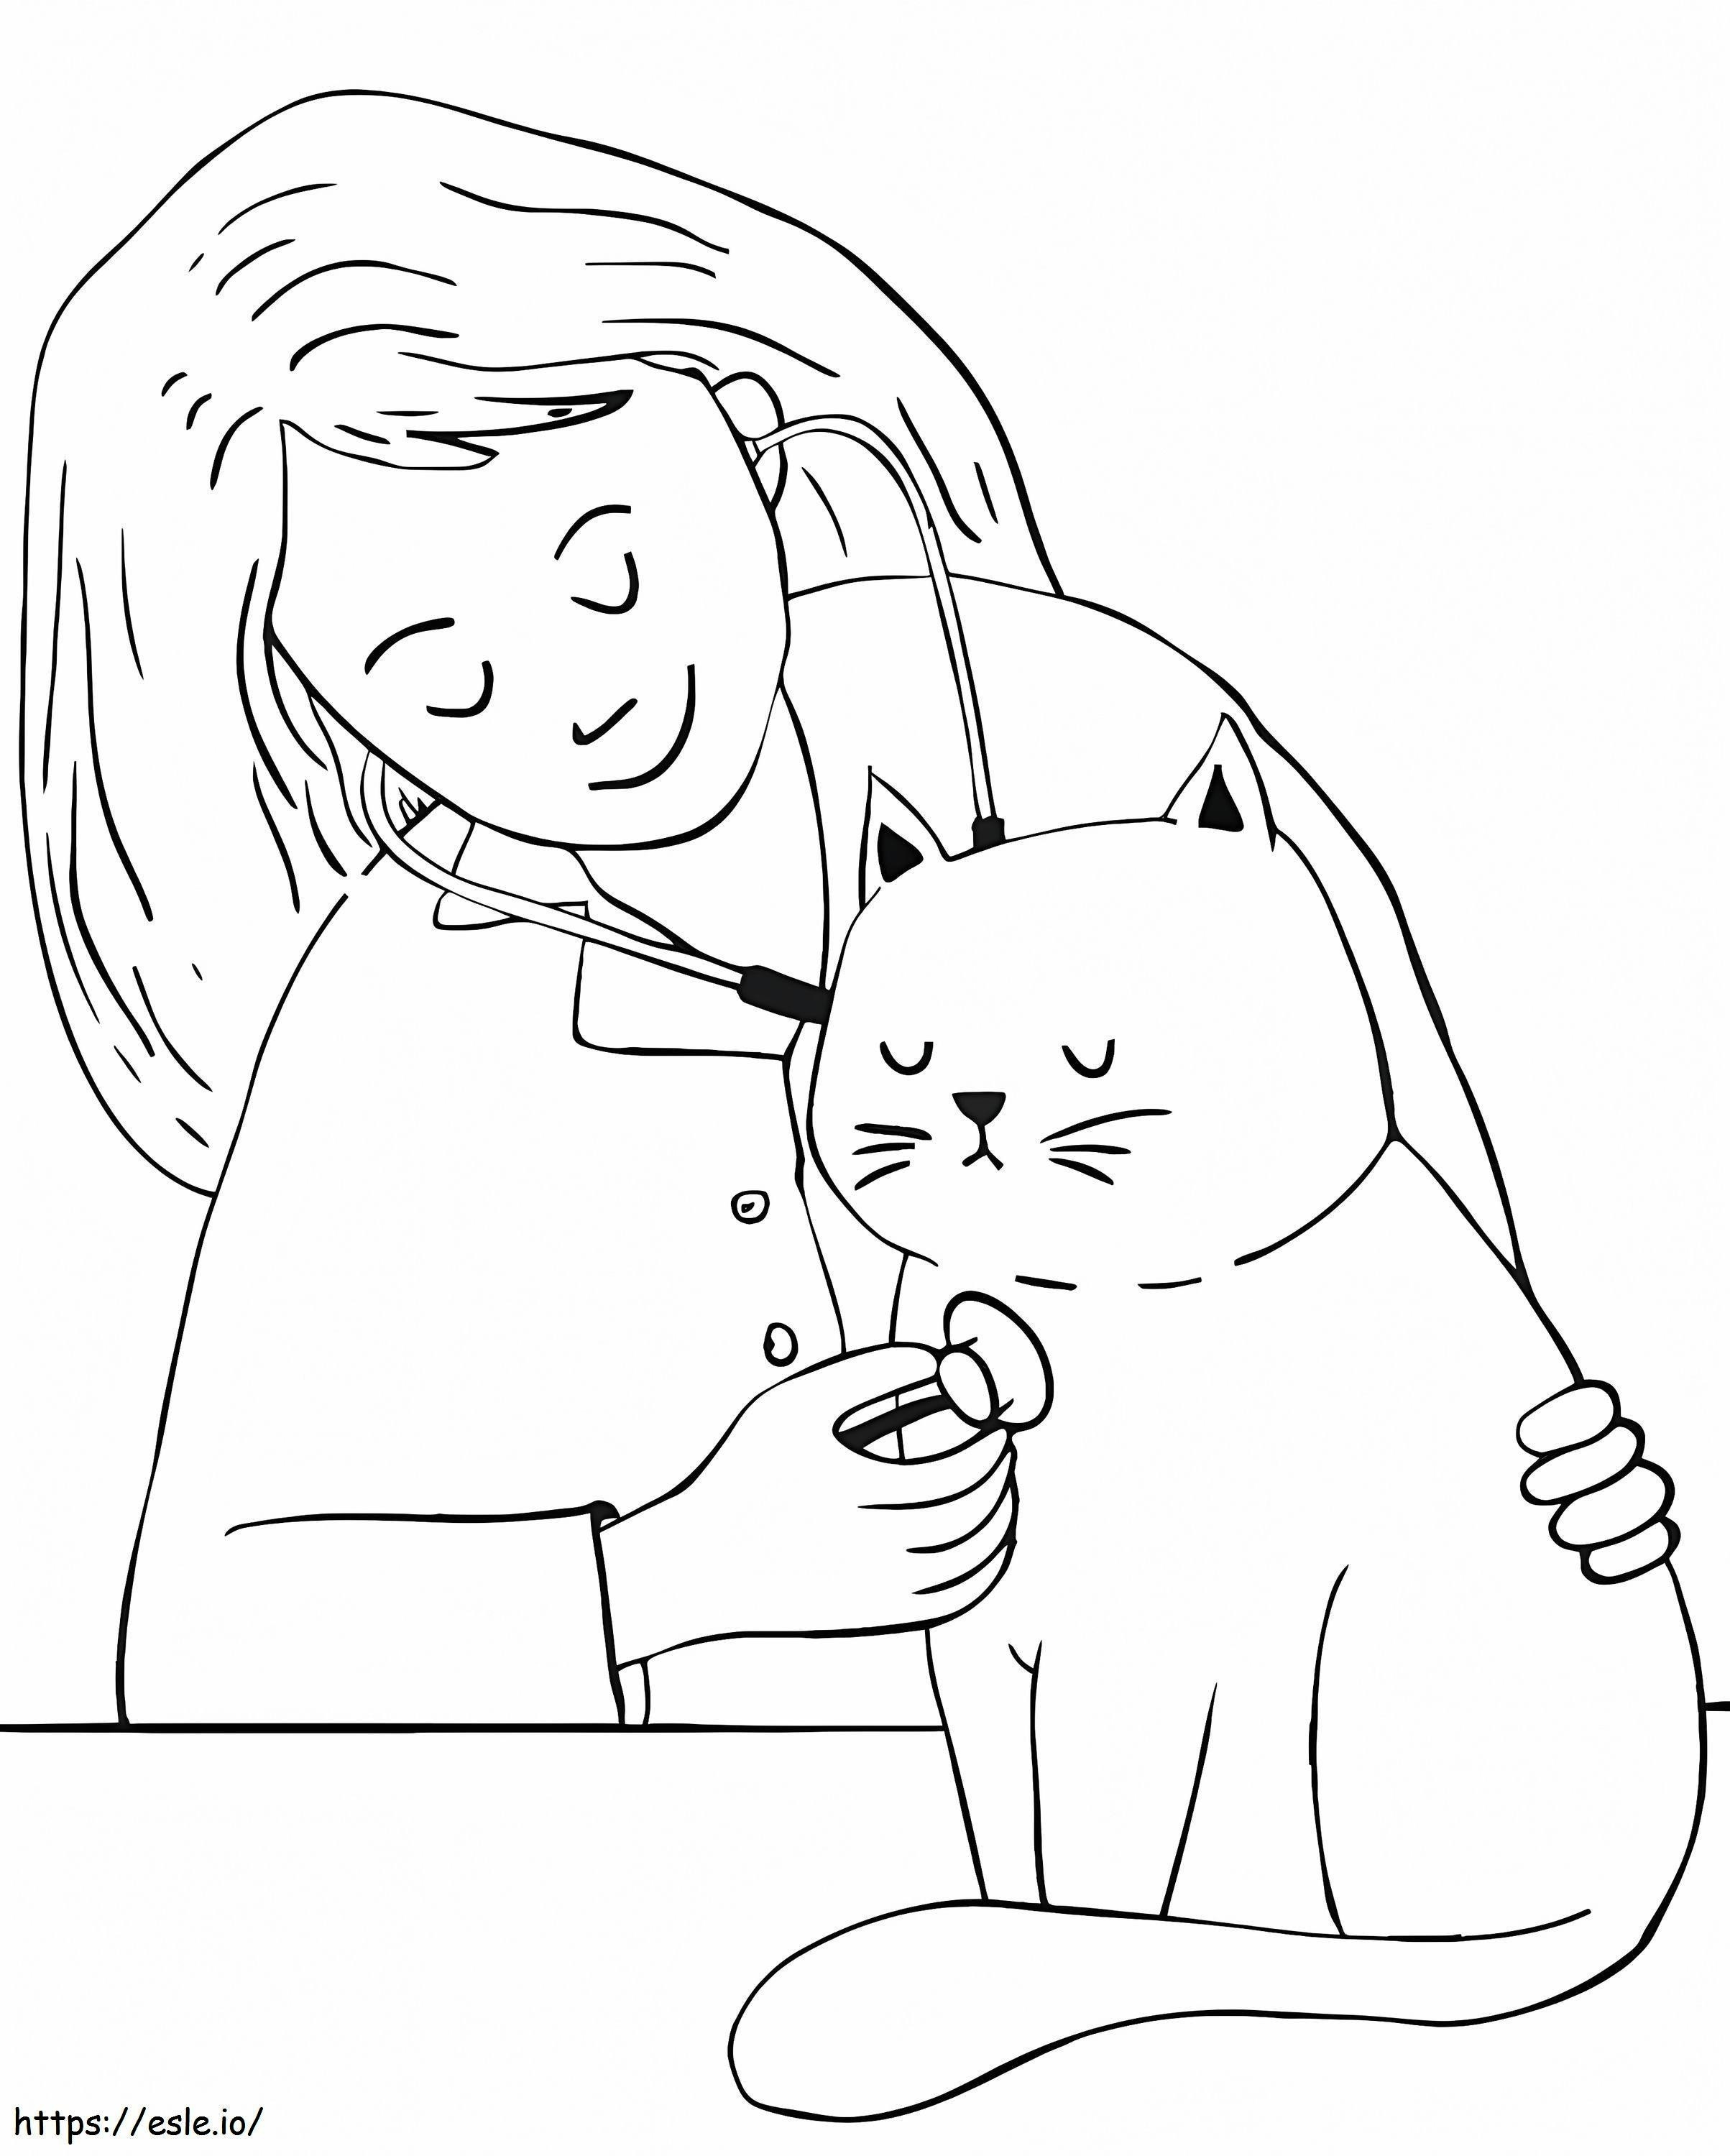 Veteriner Ve Bir Kedi boyama